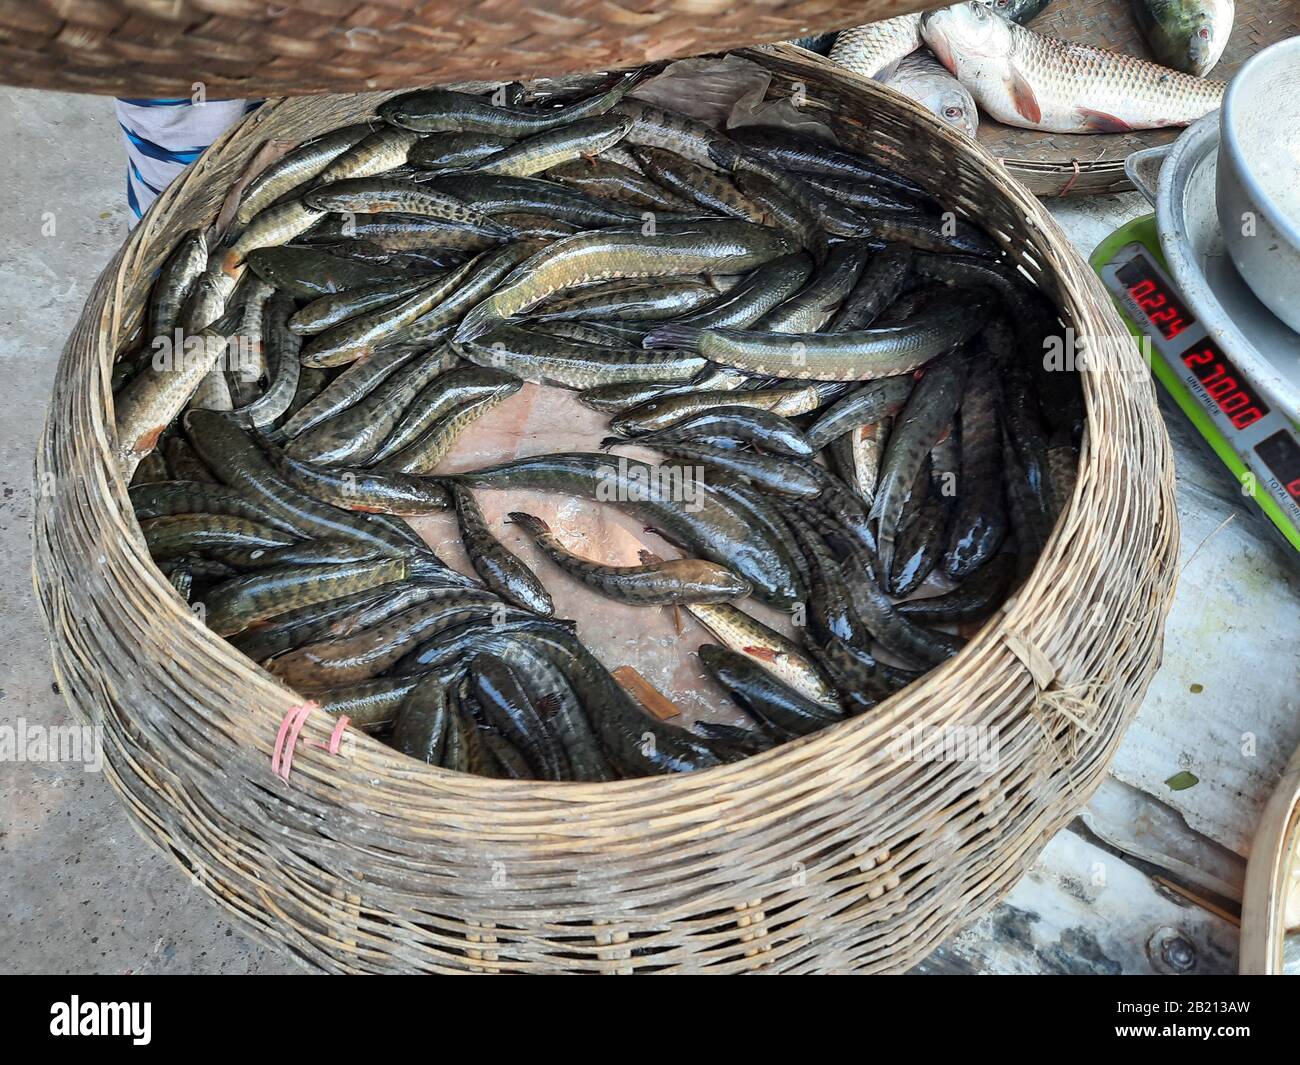 Exotische lokale Fische aus Bangladesch werden in einem runden Topf aufbewahrt, um sie an den Verbraucher in Stakhira, Bangladesch, zu verkaufen. Dieser Fisch ist sehr lecker und hat viel Abgeschmeckt. Stockfoto